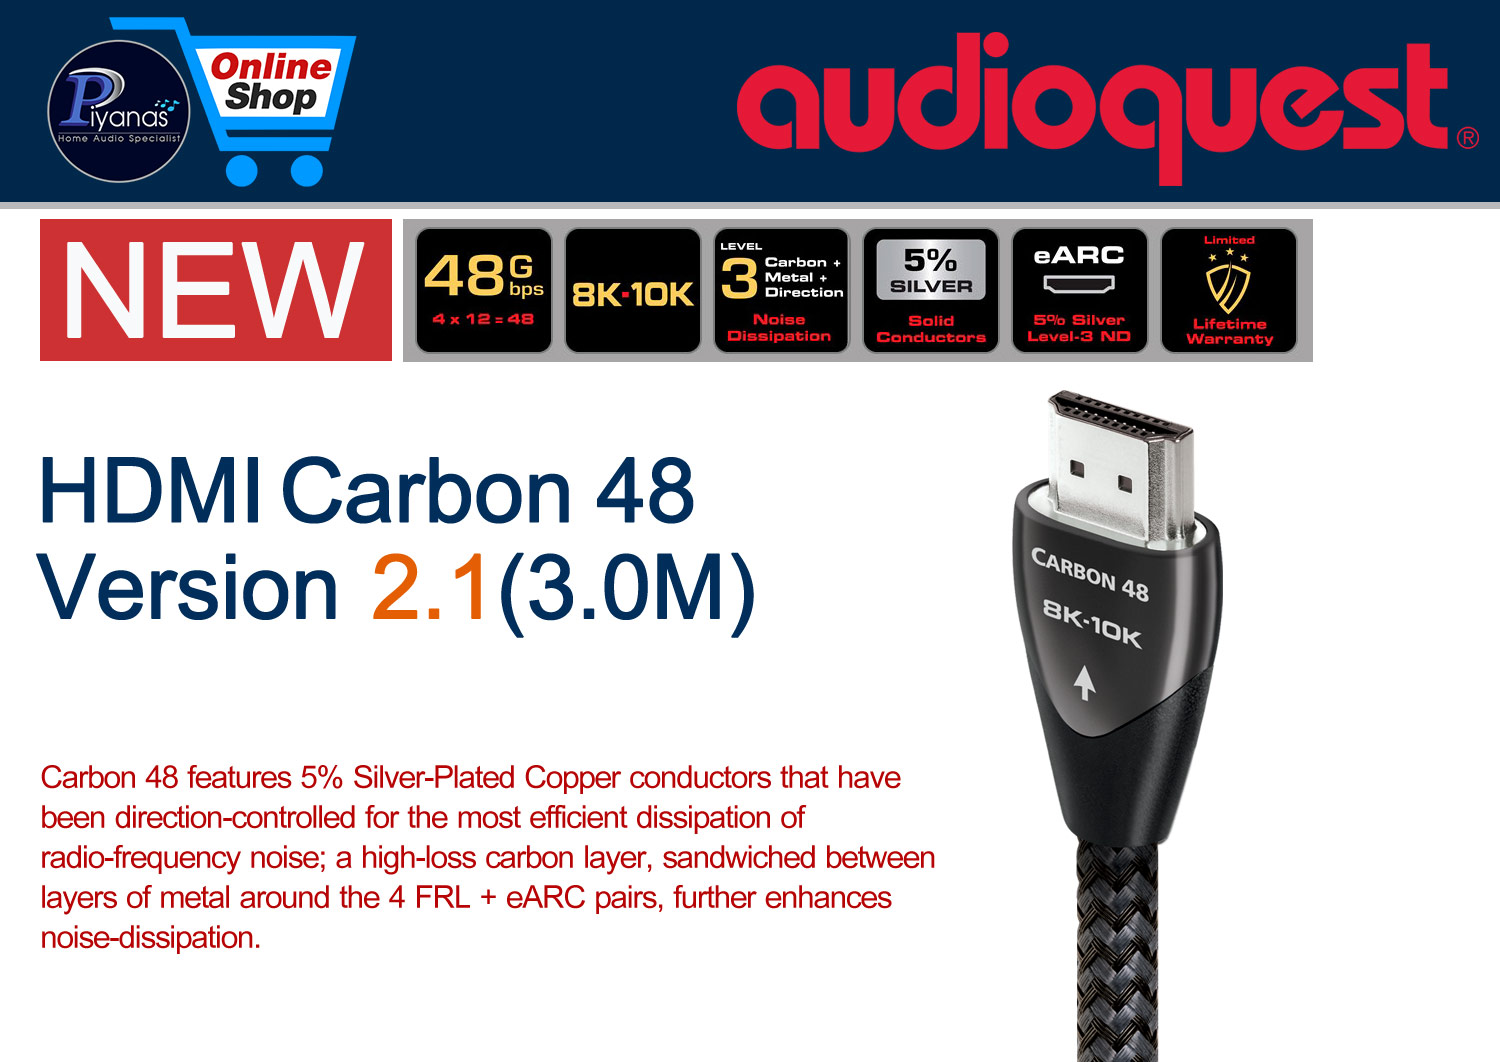 HDMI-Carbon 48 Version 2.1 (3.0M)